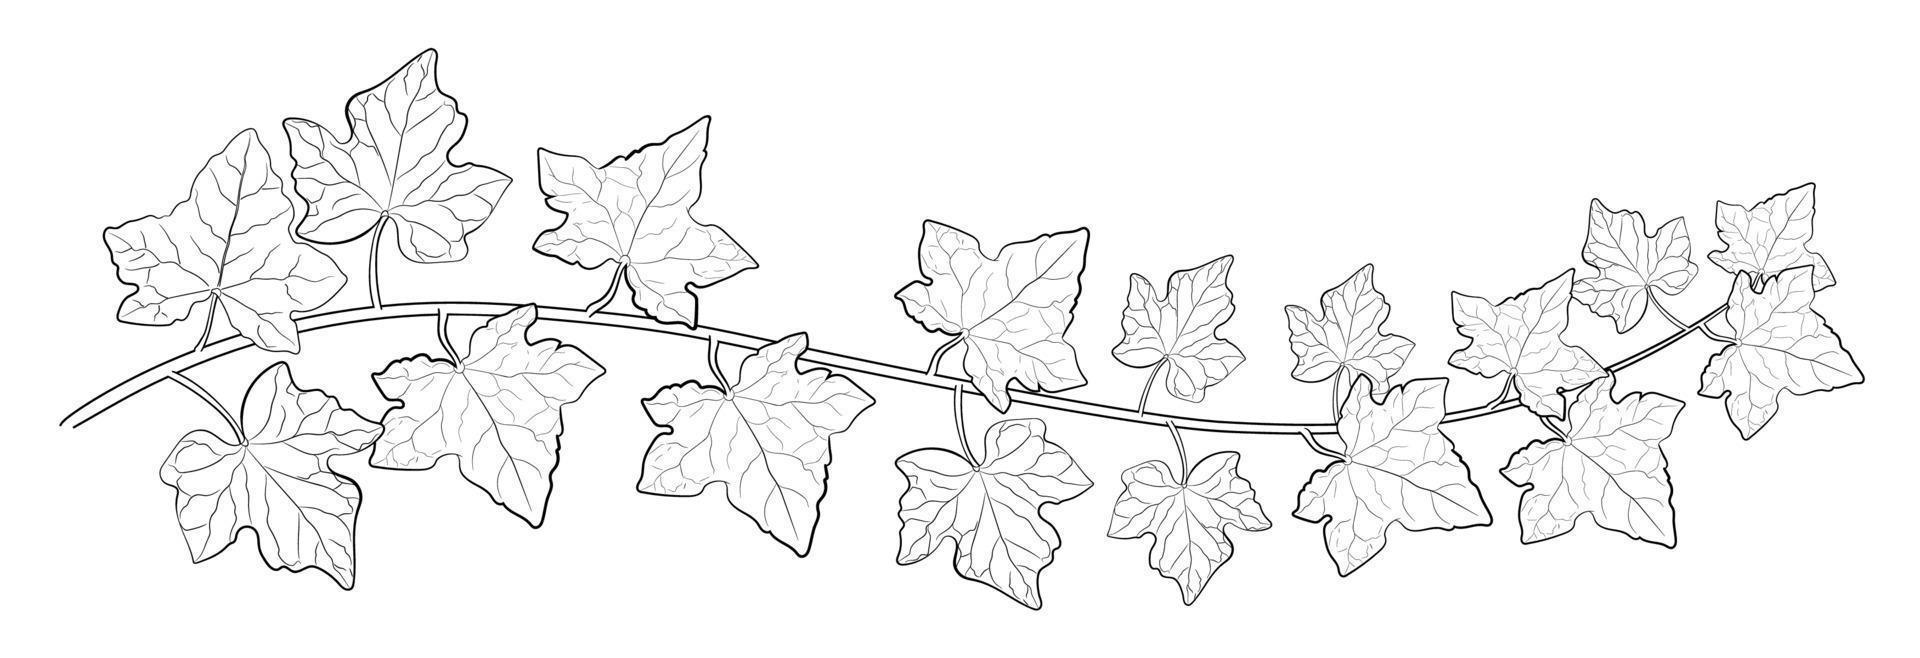 dessin de feuilles de lierre. vecteur